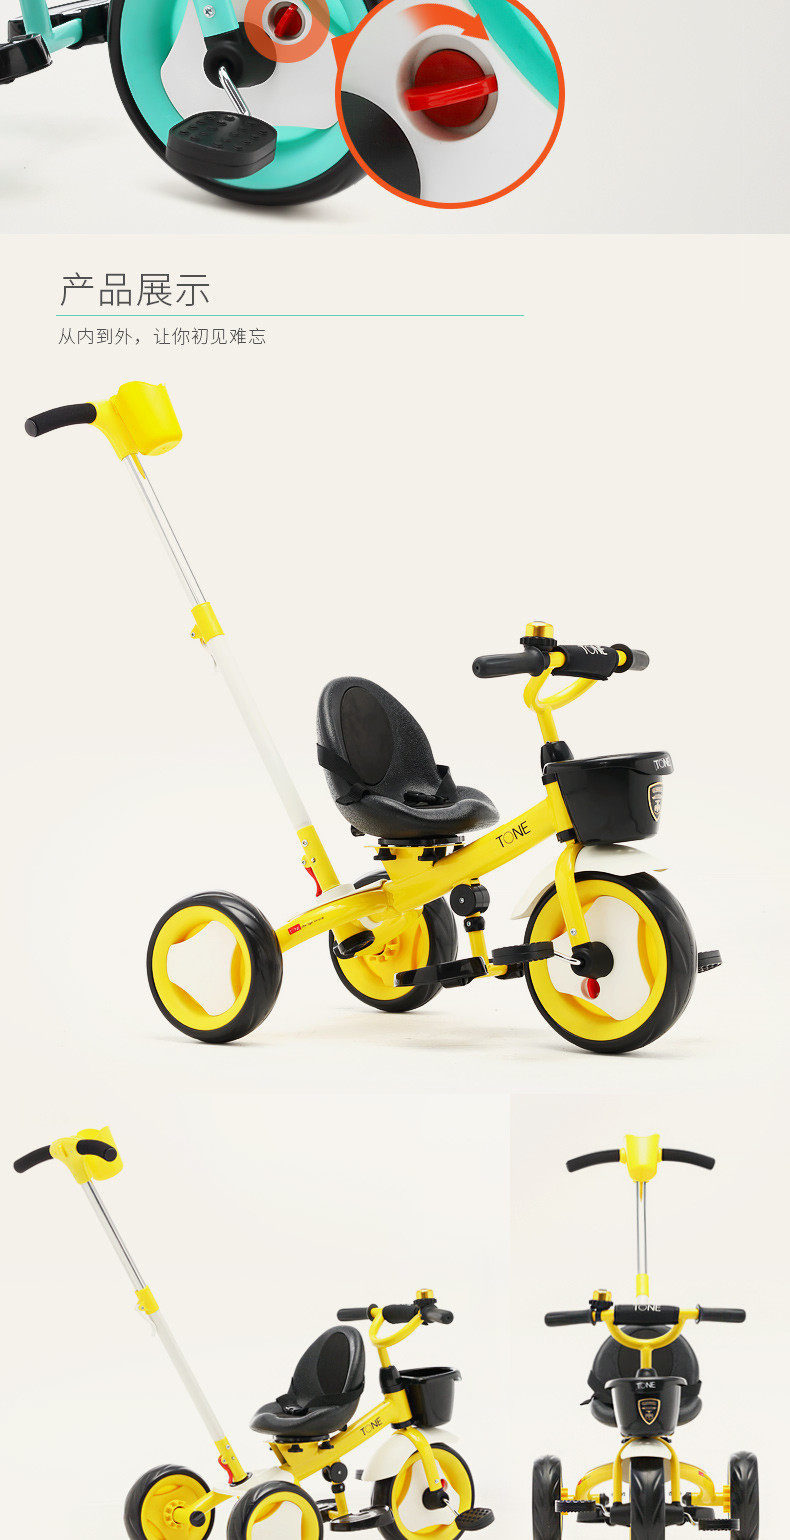 小虎子 T150儿童三轮脚踏车 简约推行骑行三轮推车童车 2-6岁儿童车 可换向